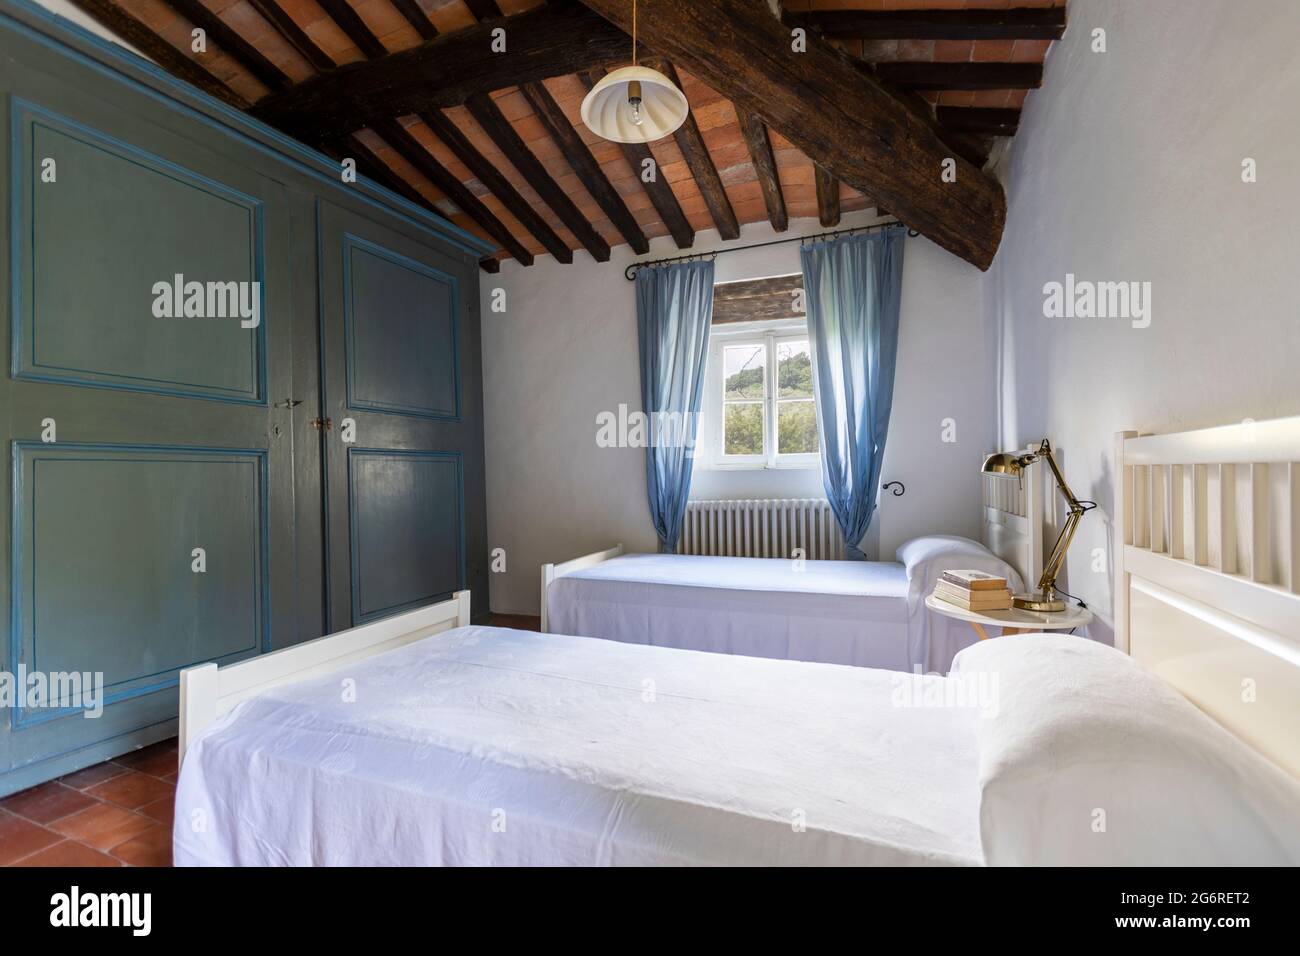 Das Innere eines alten Schlafzimmers, fast antik. Typisch italienischer Stil. Niemand drinnen Stockfoto